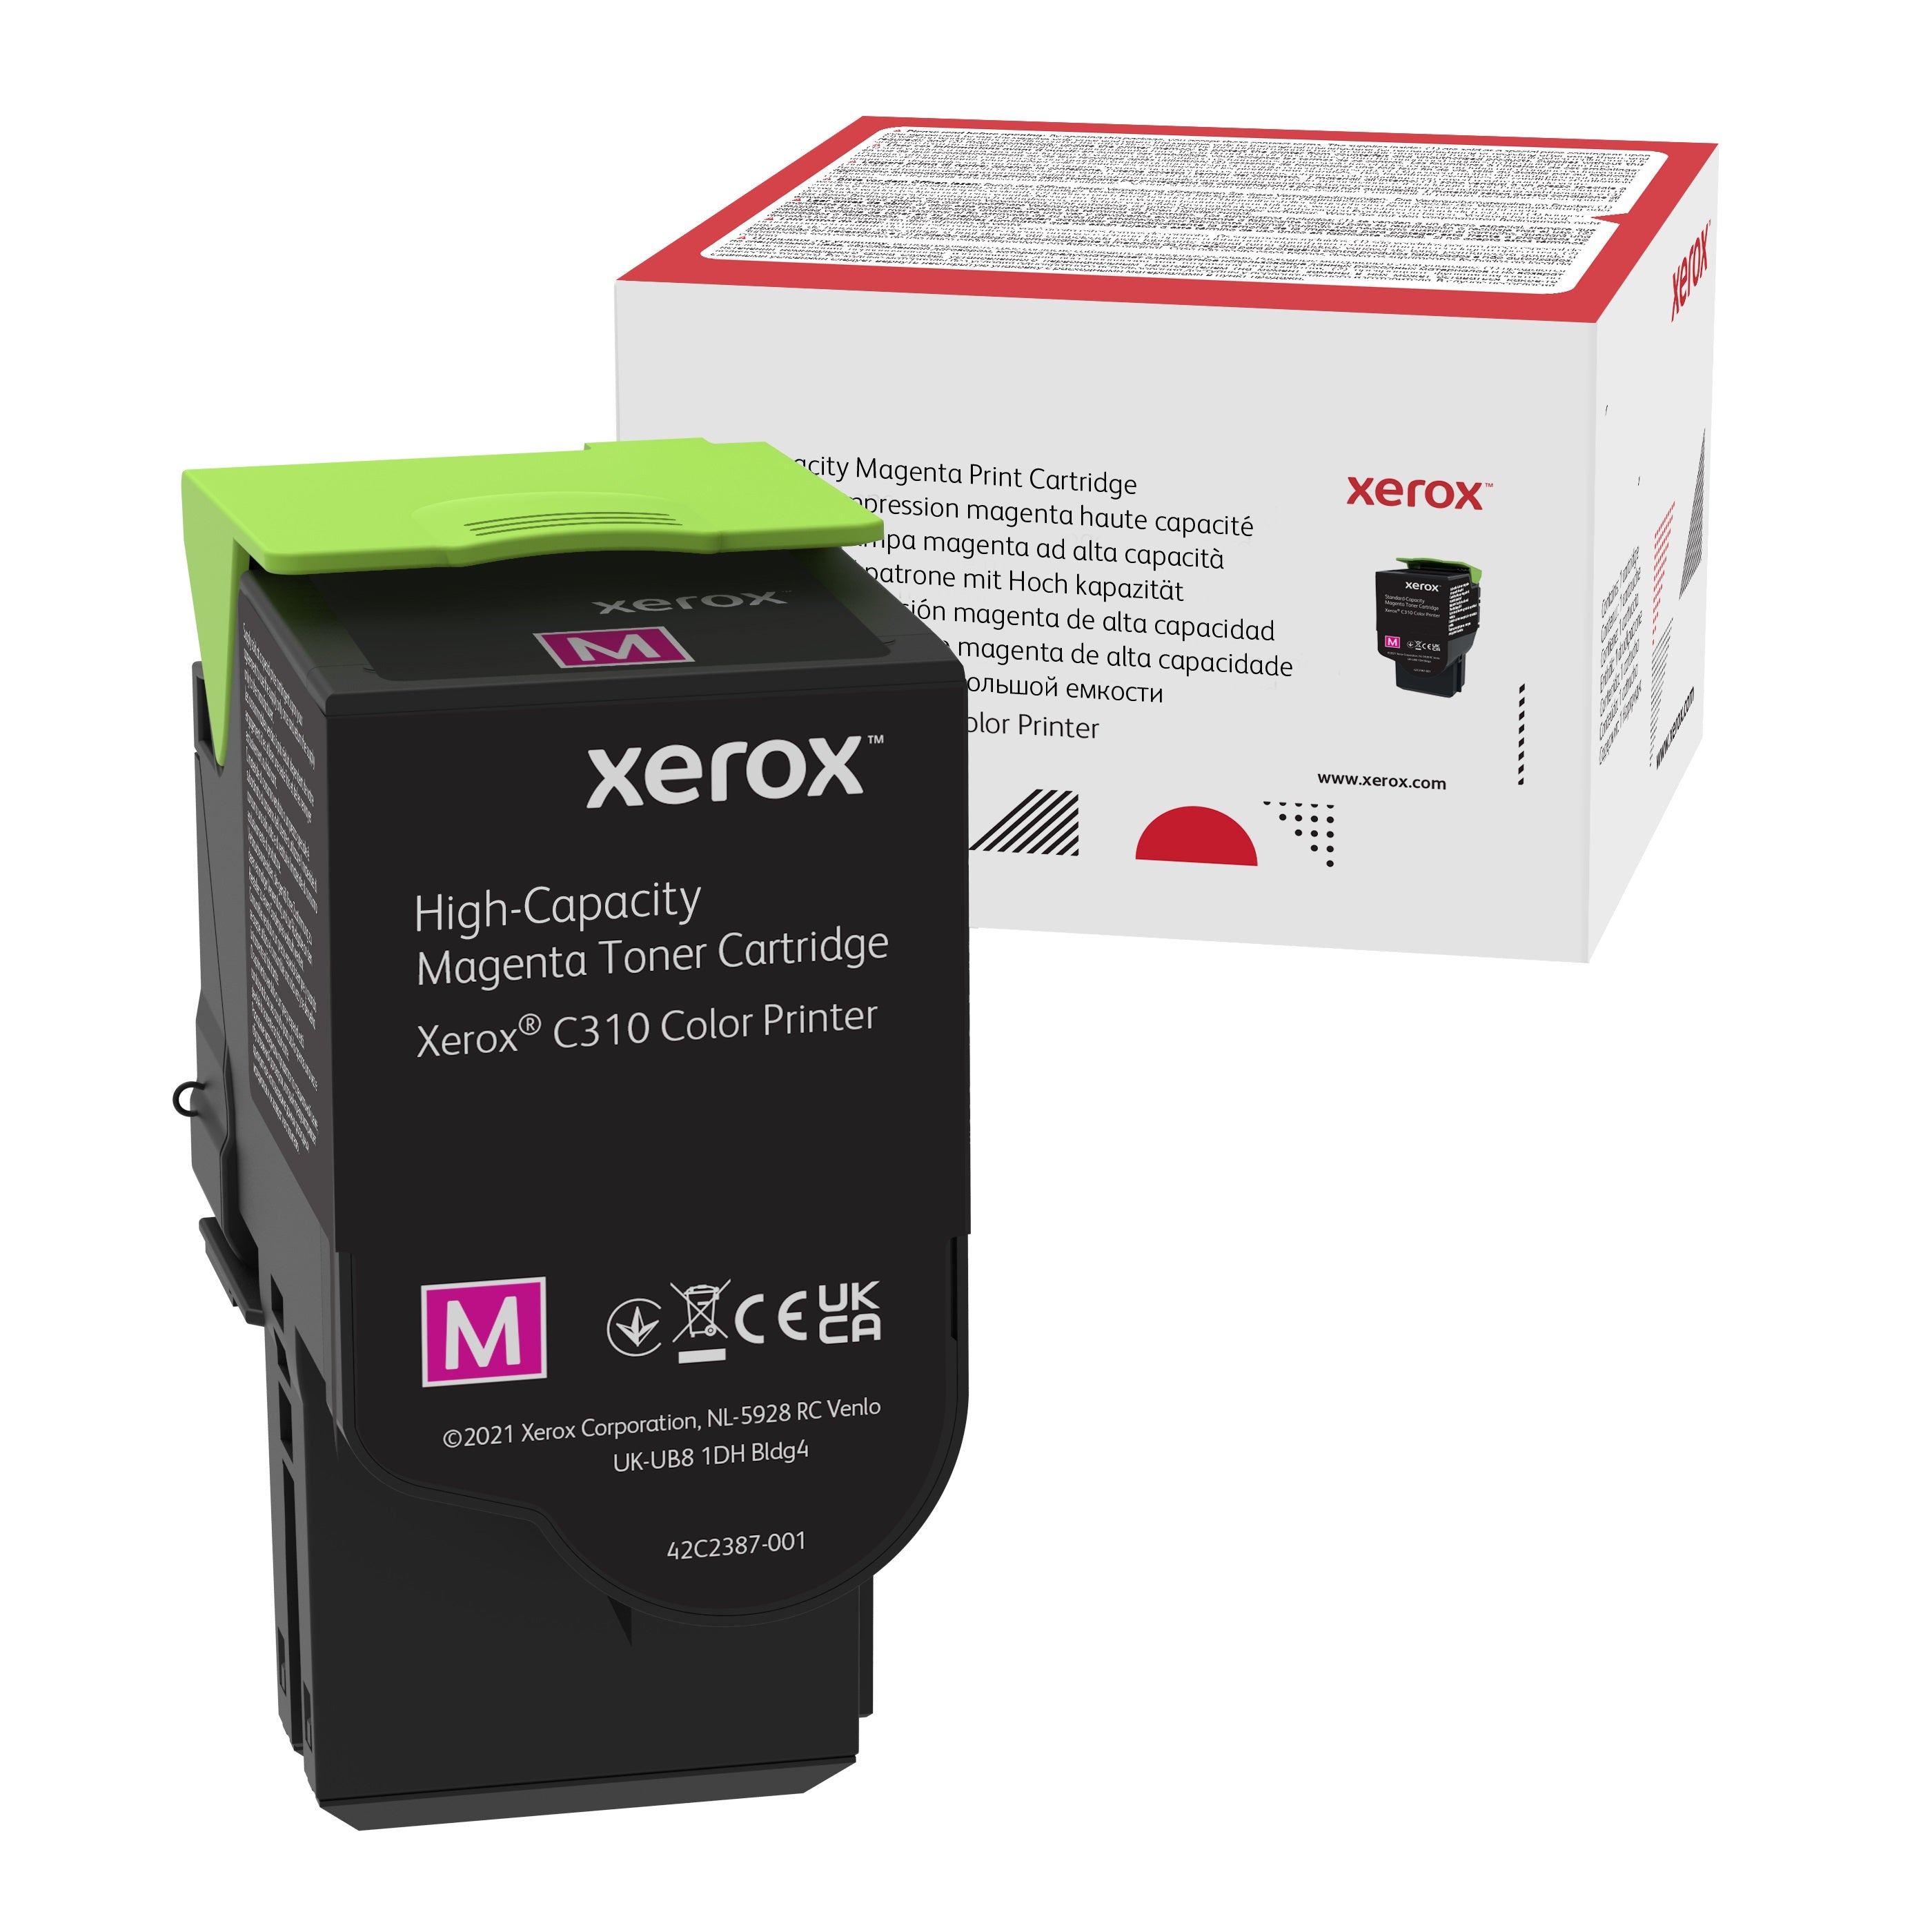 Absolute Toner Genuine Xerox 006R04366 High Capacity Magenta Toner Cartridge For C310/C315 Color Printer Original Xerox Cartridges